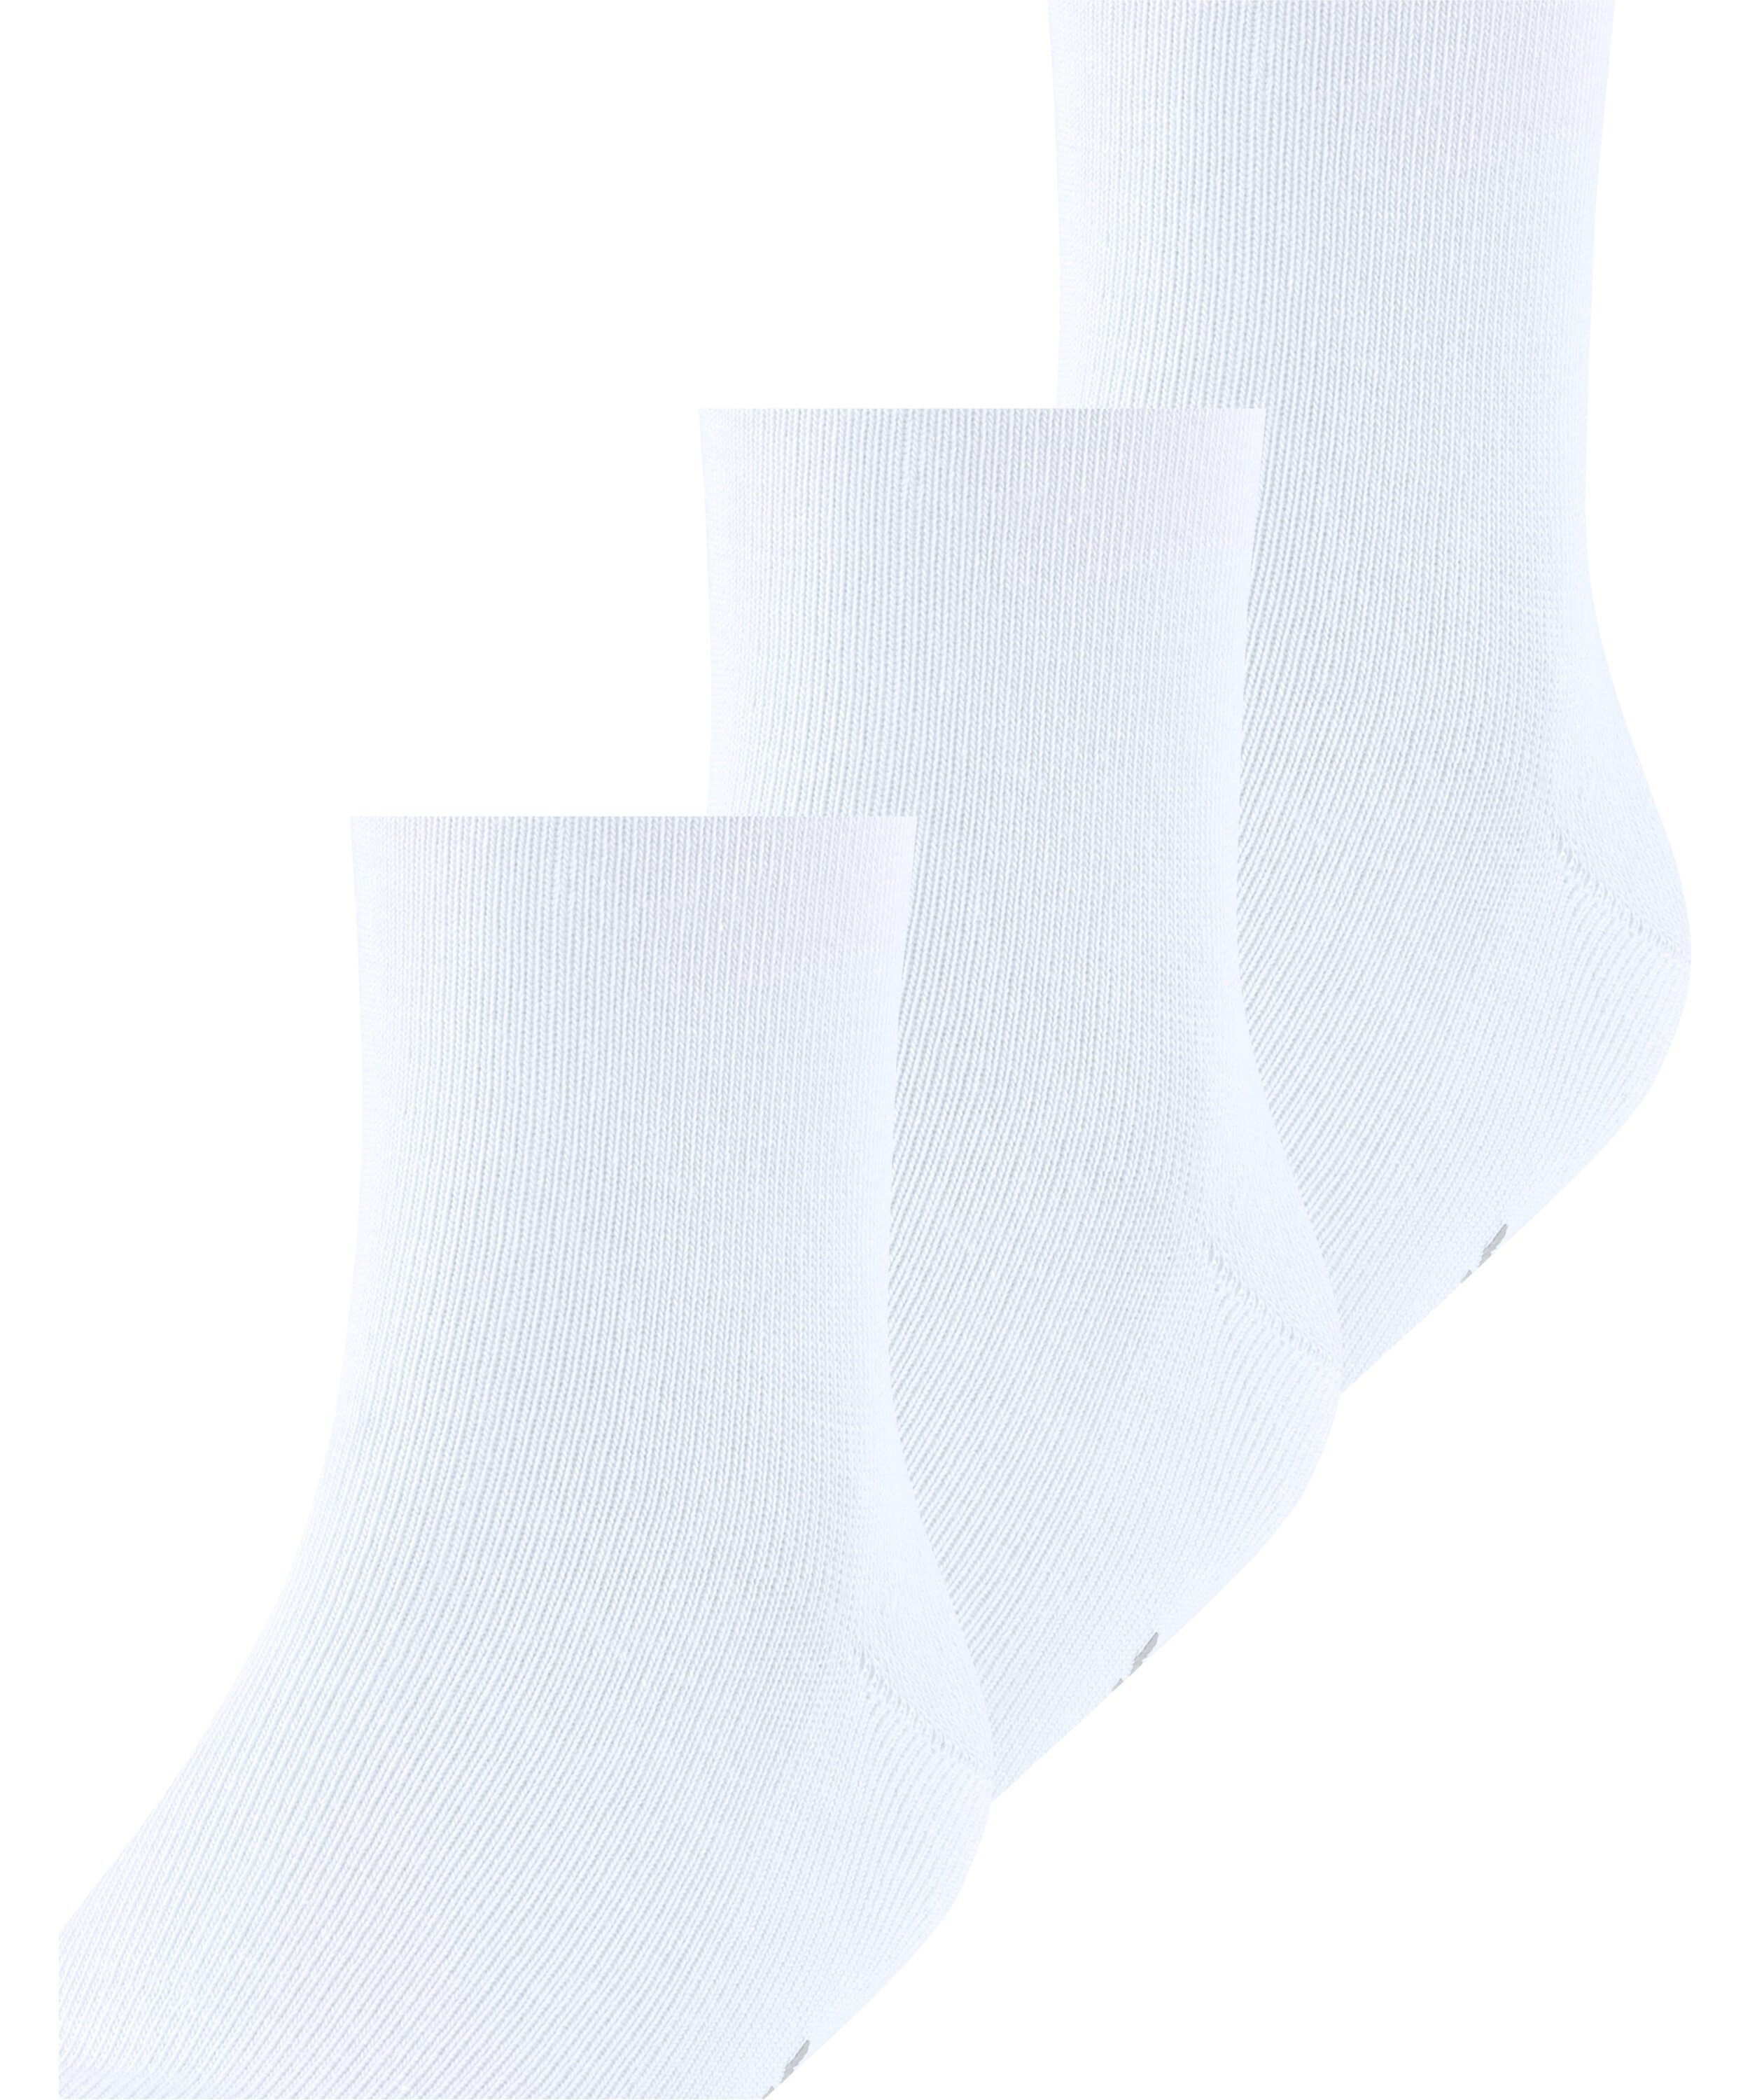 FALKE Socken Family 3-Pack (3-Paar) (2000) white